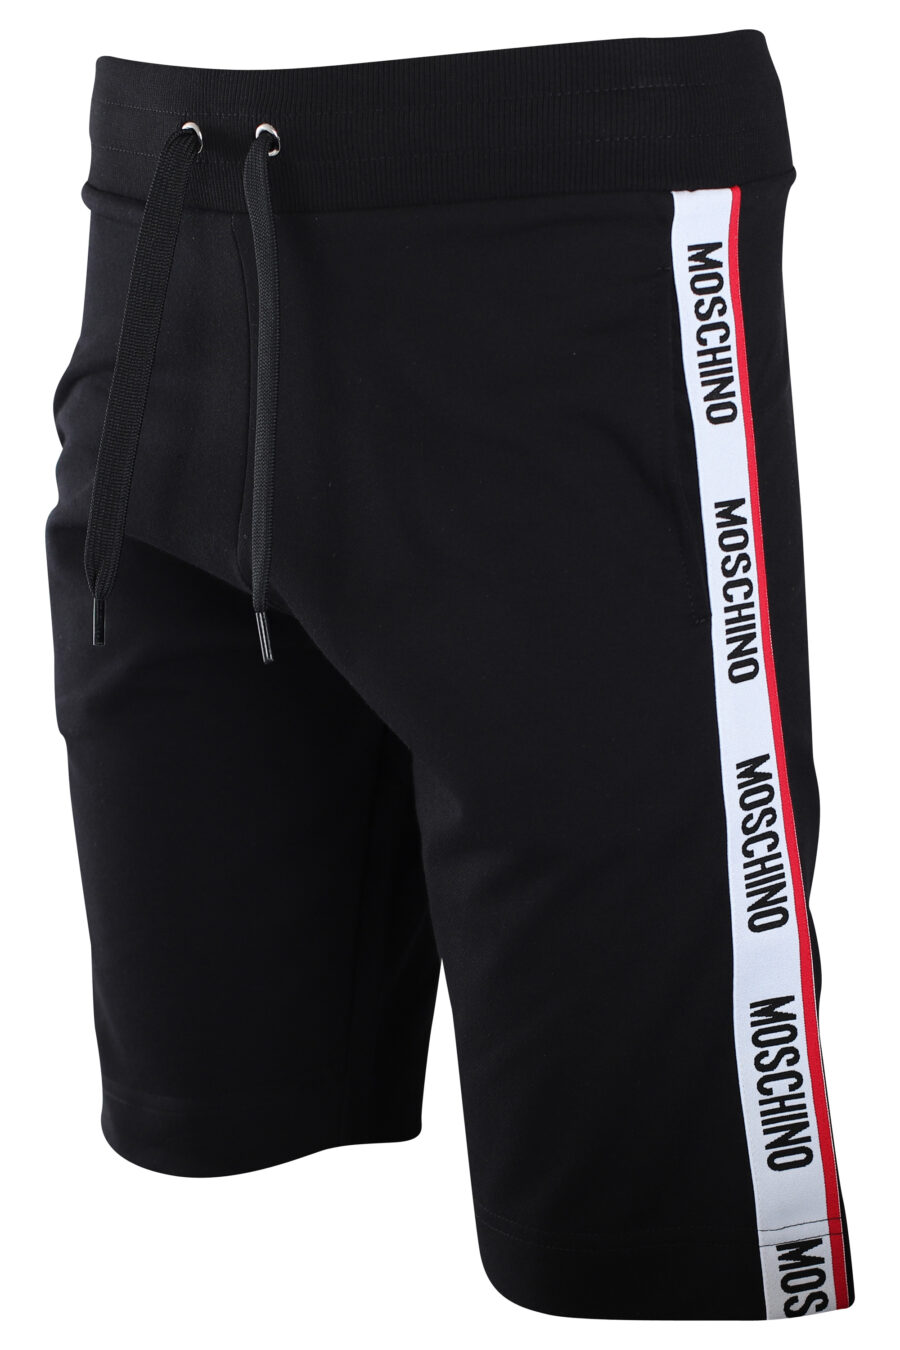 Pantalón de chándal negro con logo laterales "underbear" - IMG 2236